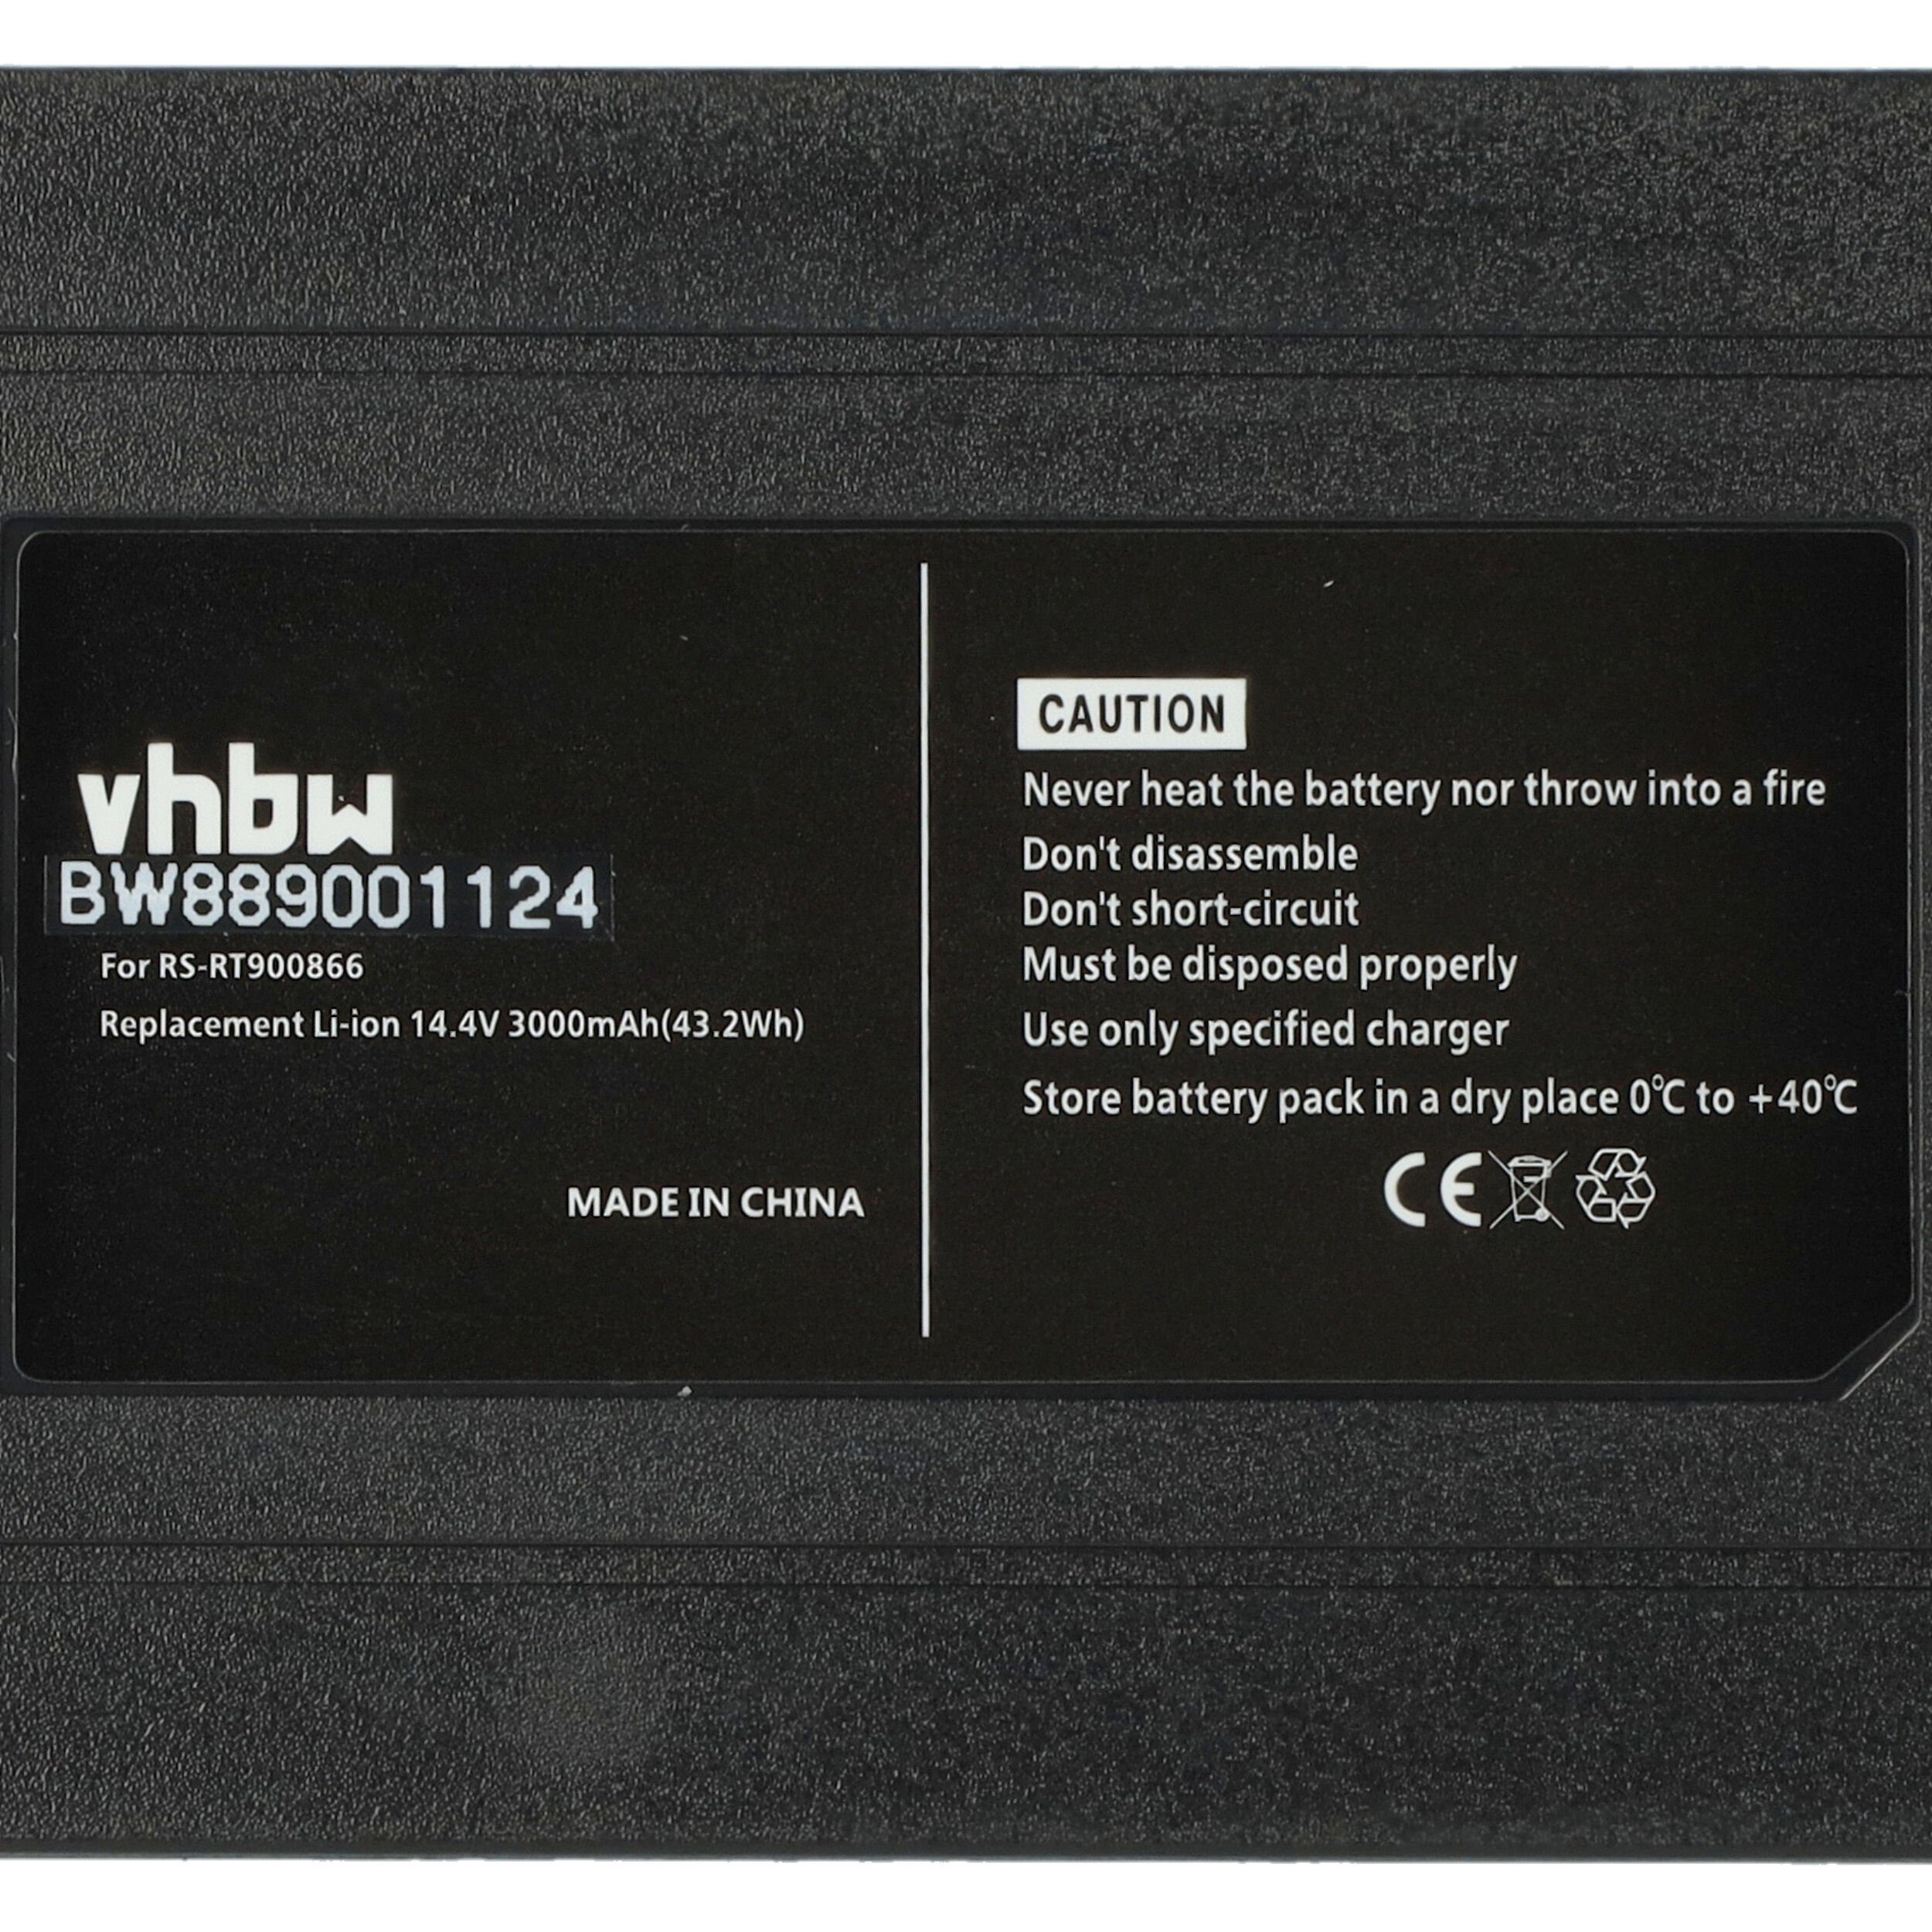 vhbw passend 60 X-plorer für mAh 3000 RR7455WH Serie Connect Animal RR7455, Staubsauger-Akku Rowenta